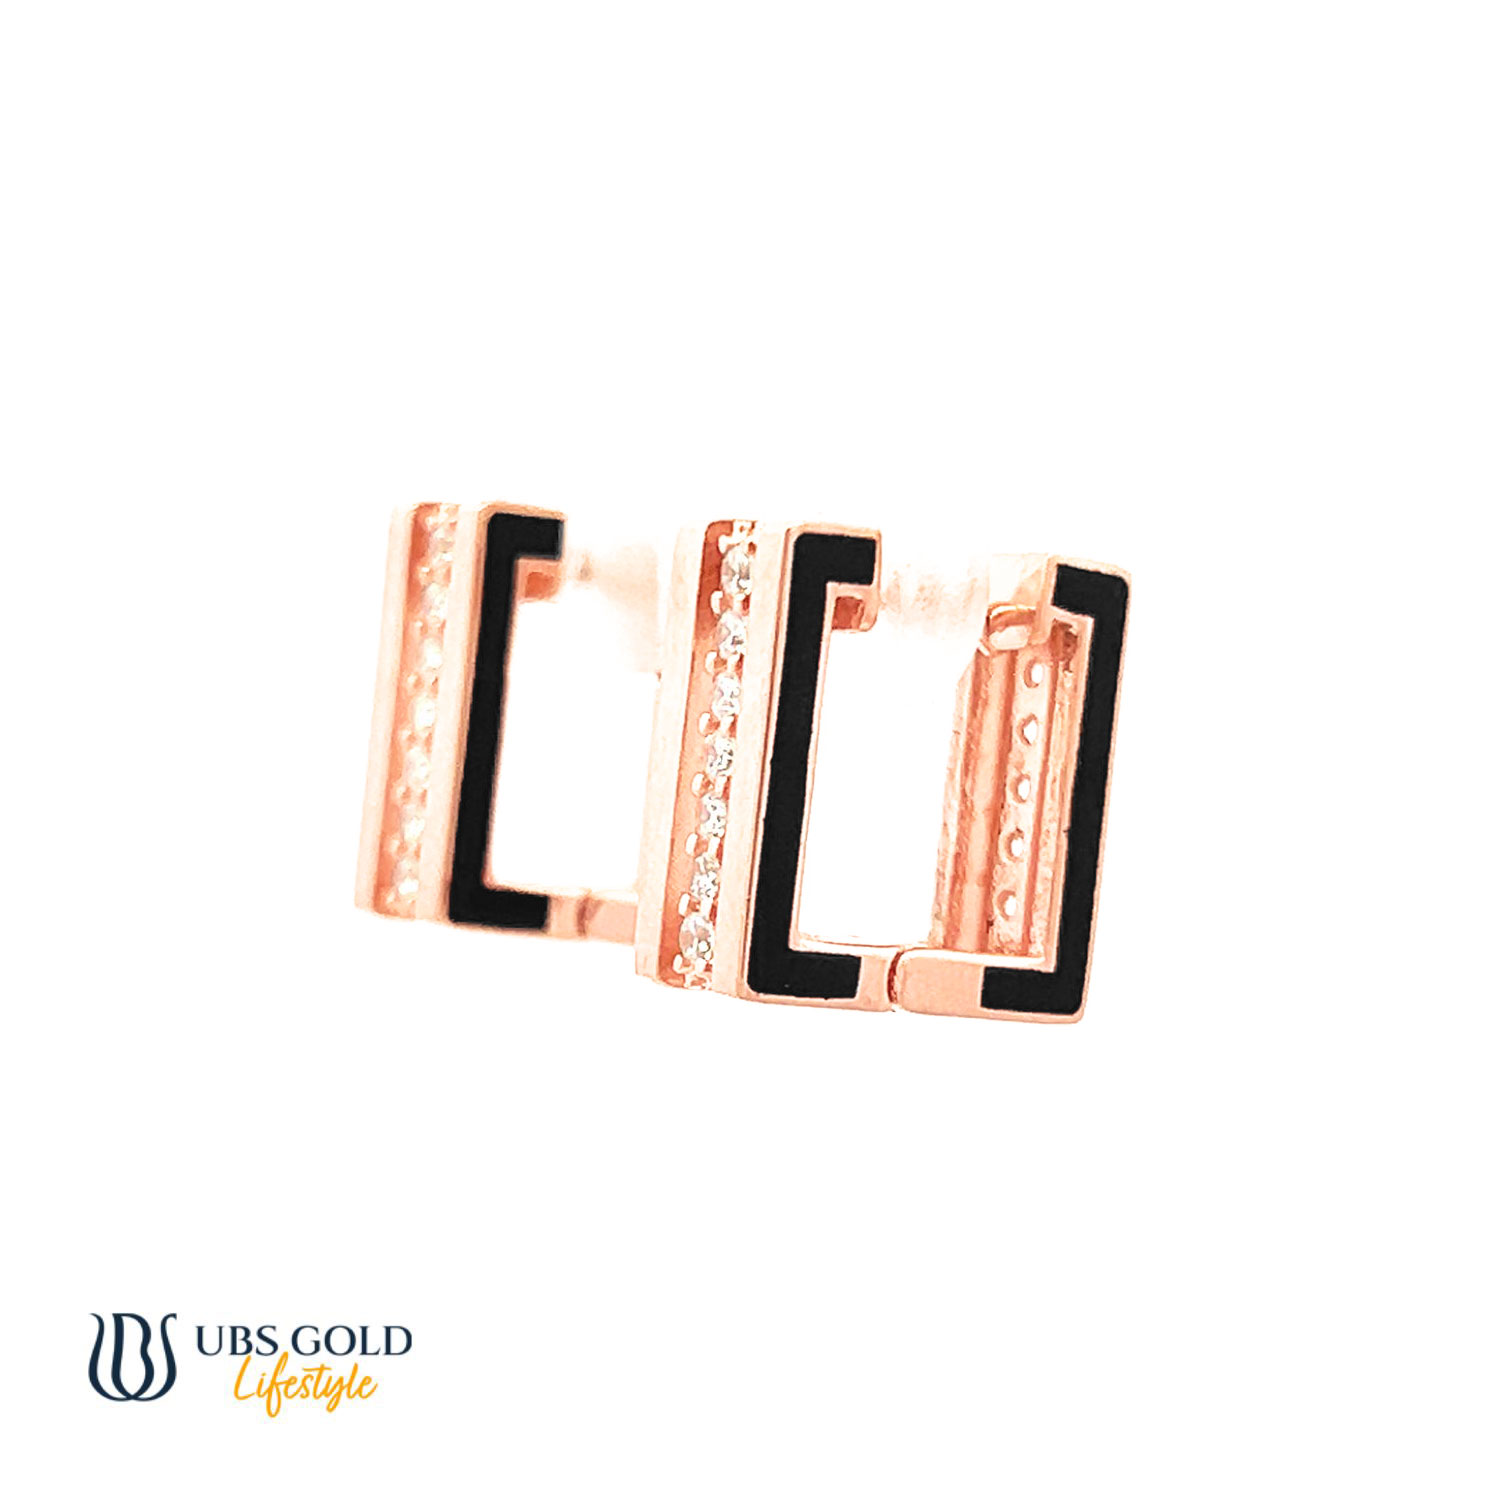 UBS Gold Anting Emas - Cda0052 - 17K